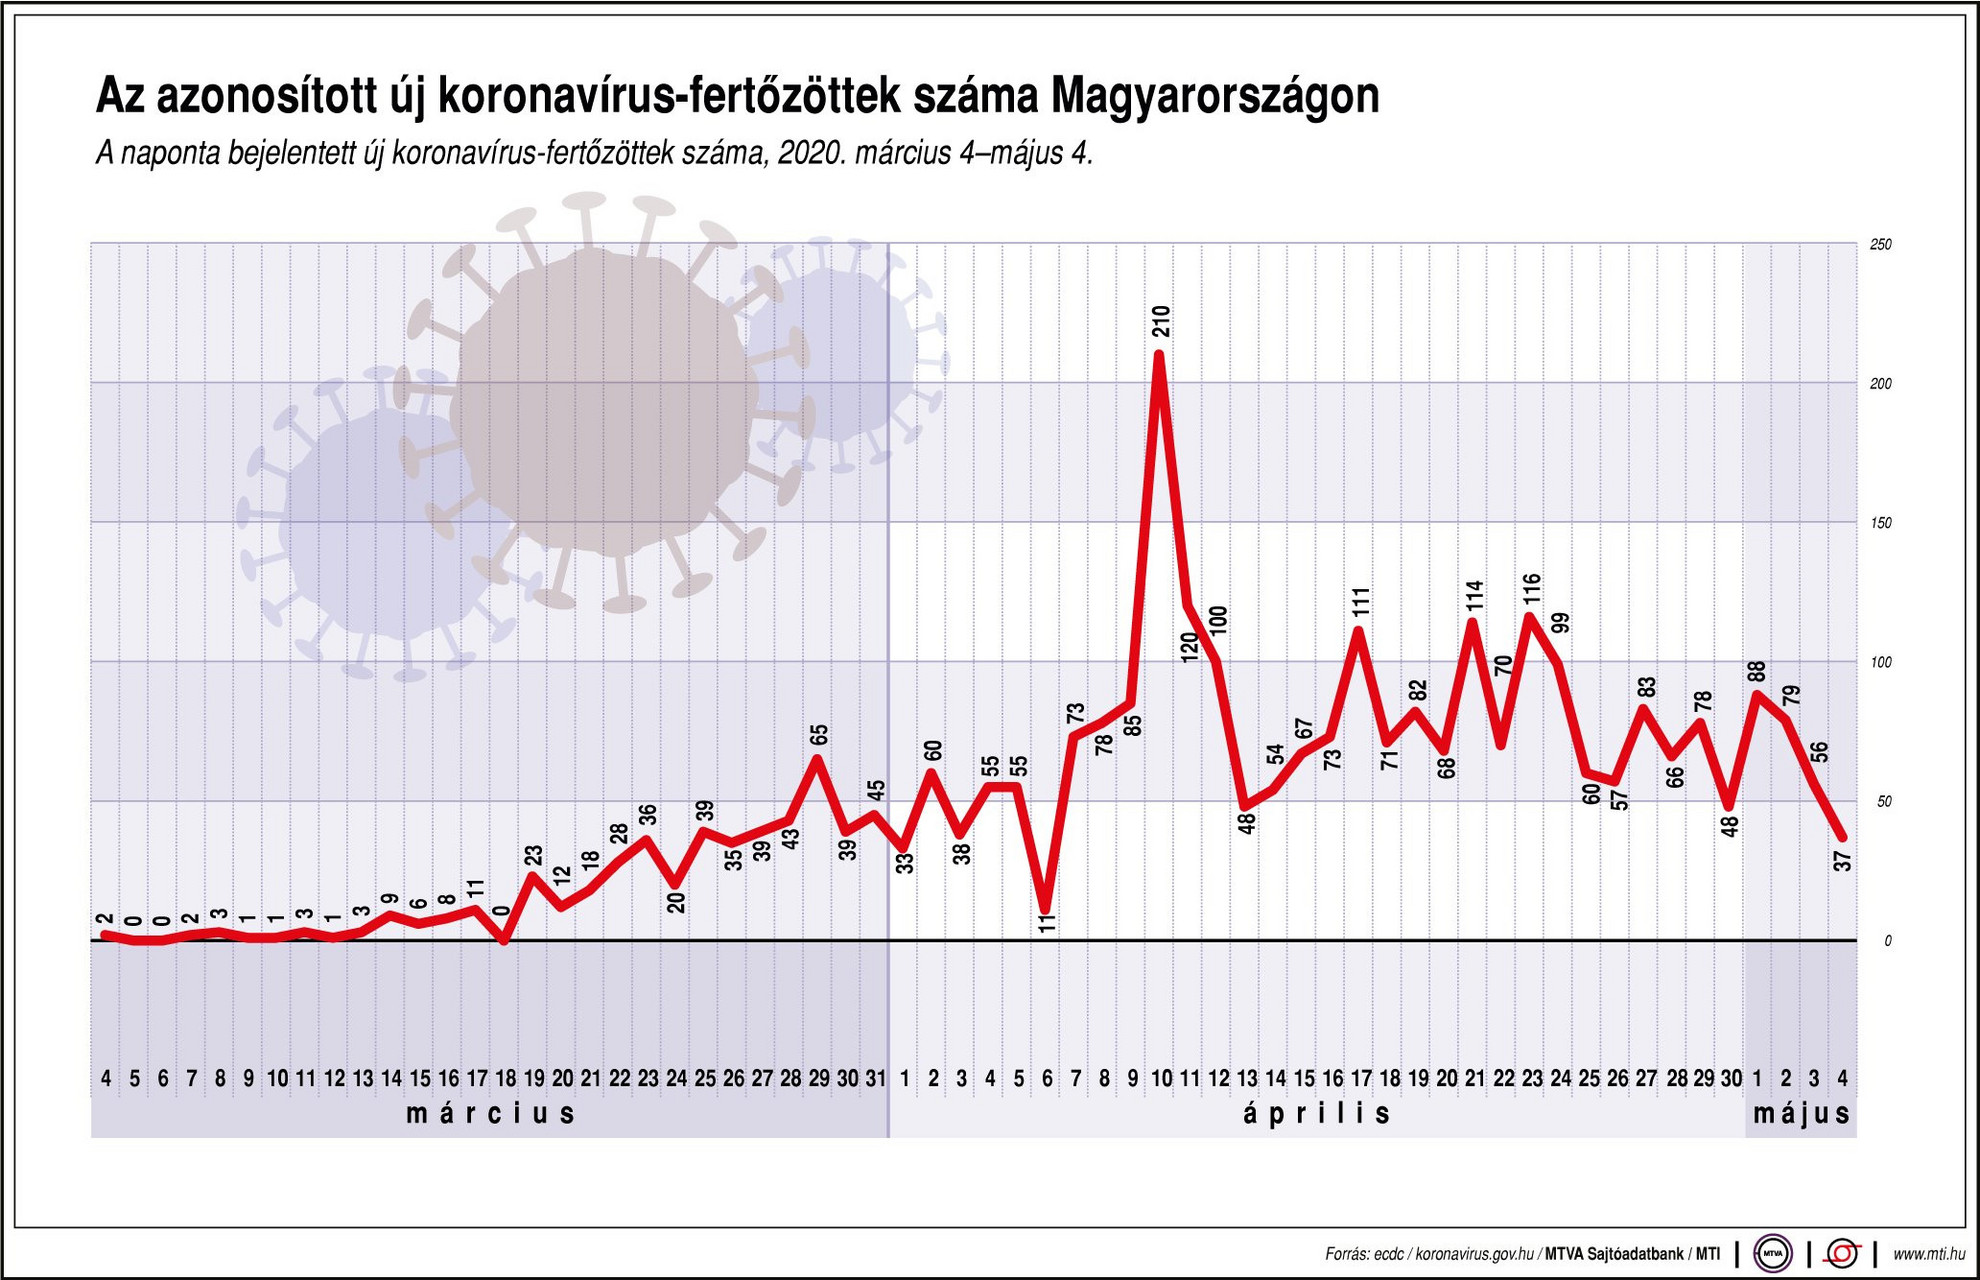 Az azonosított új koronavírus-fertőzöttek száma Magyarországon, 2020. március 4-május 4. között